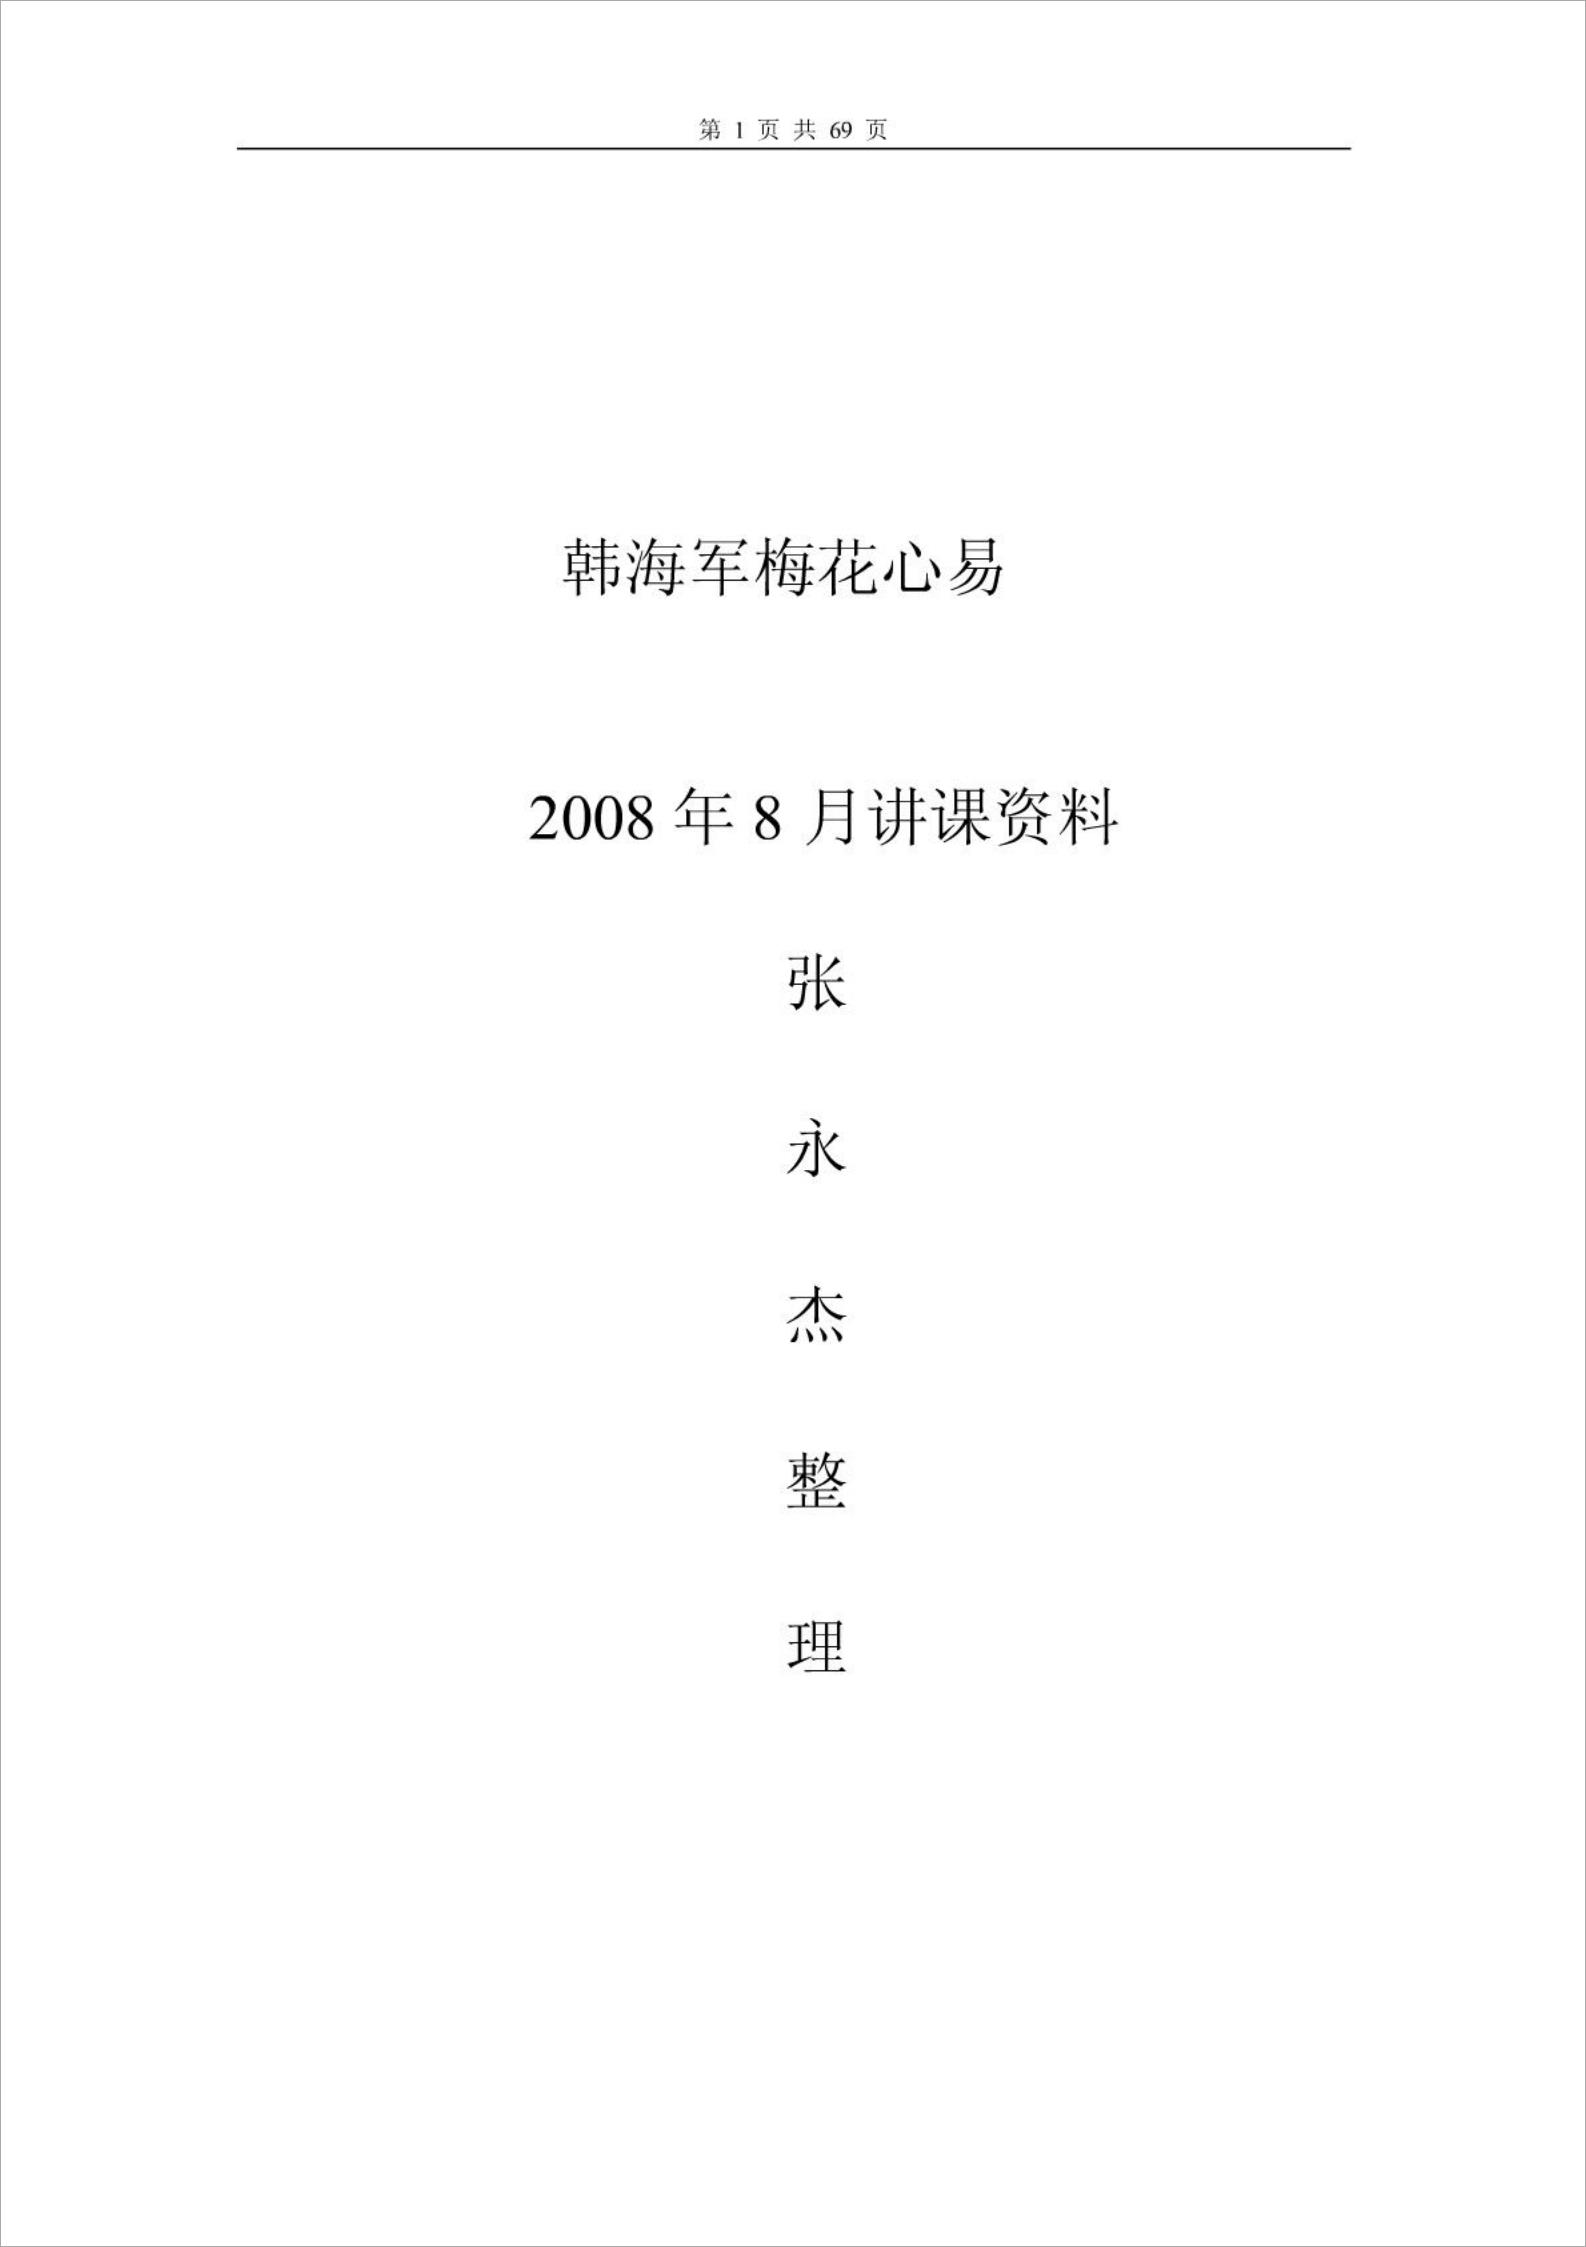 韩海军讲课资料.pdf